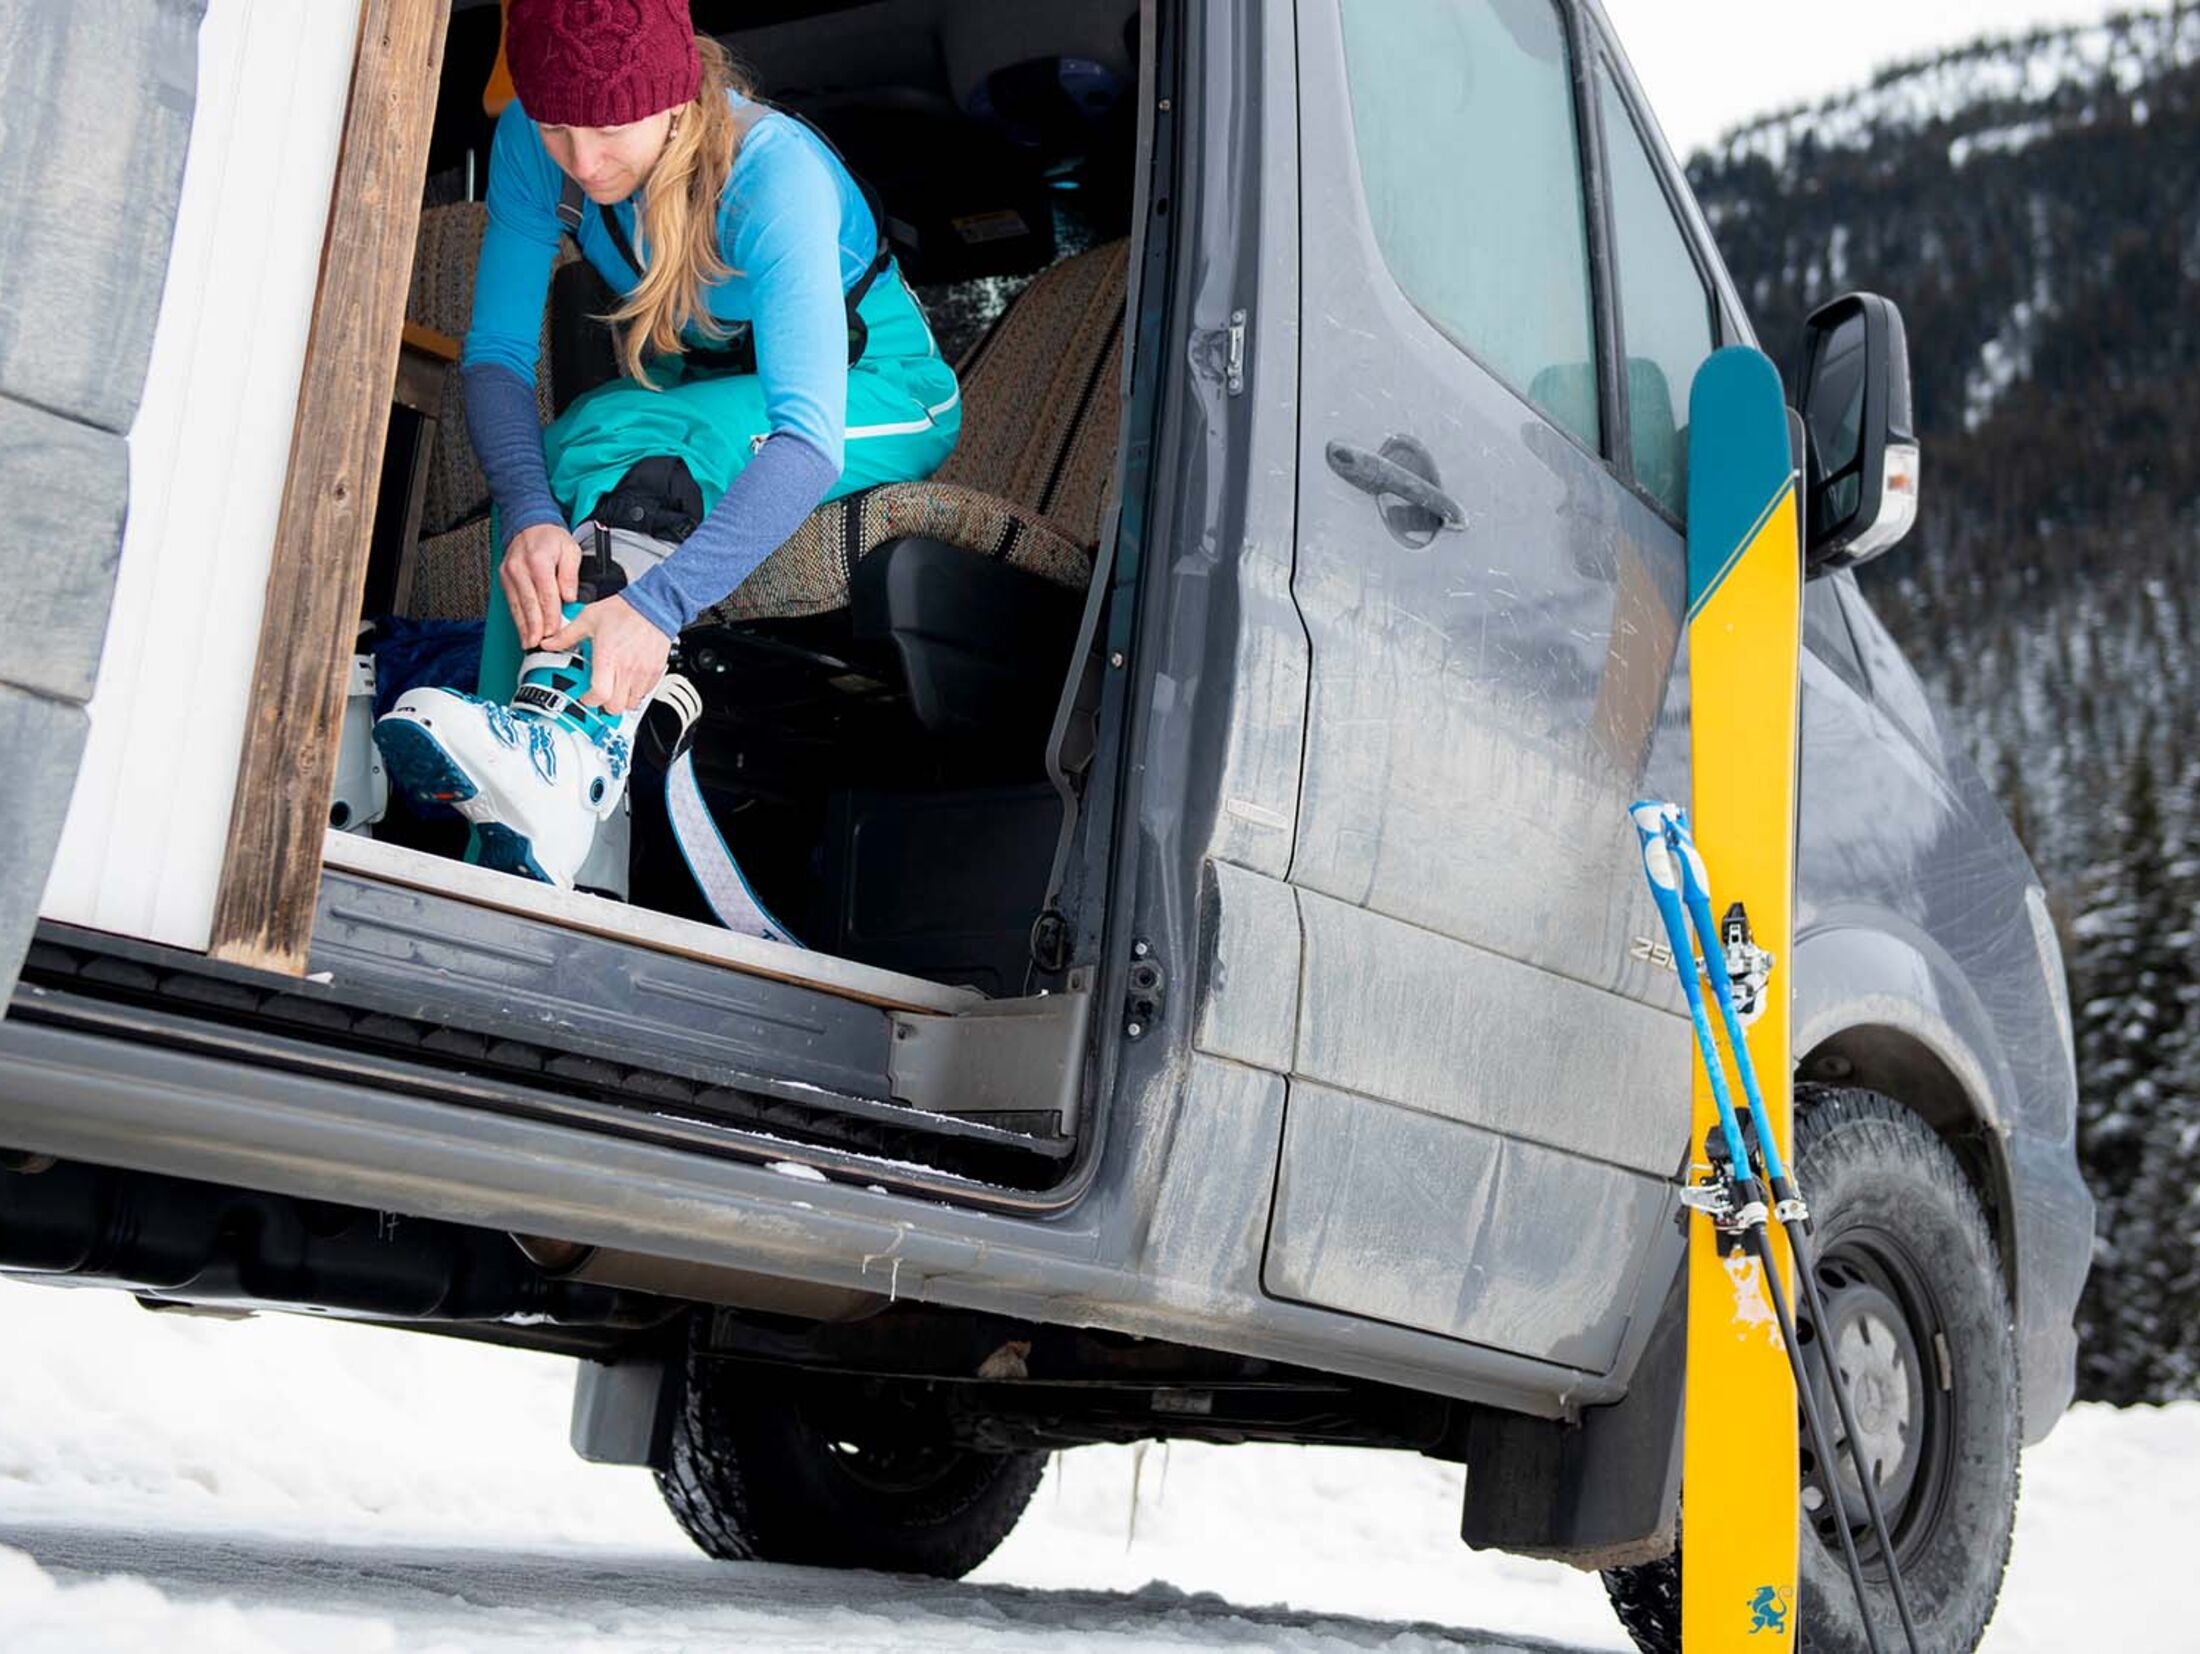 Skier und Wintersport-Gear im Campingbus verstauen